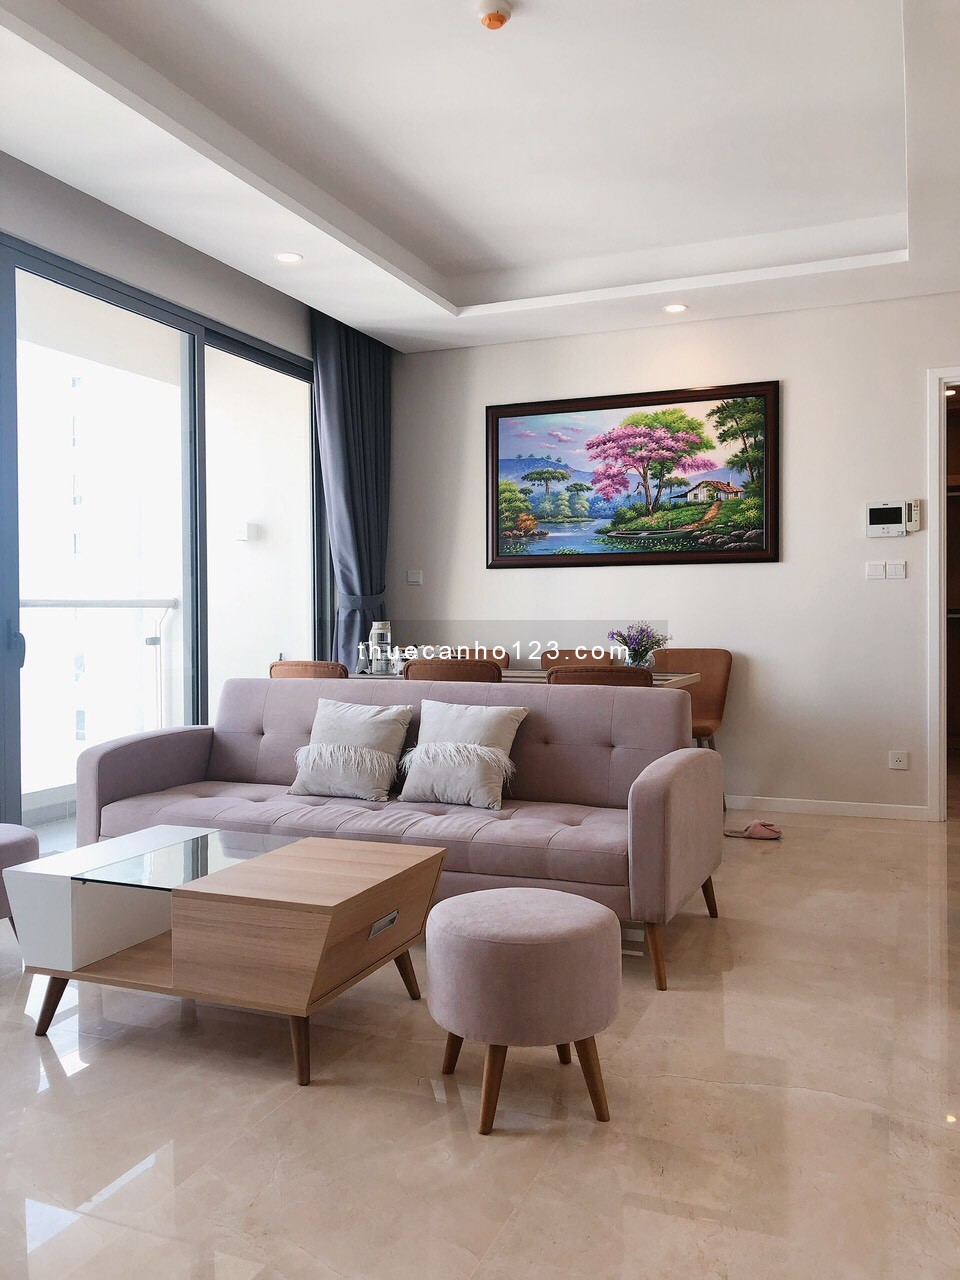 Giá siêu tốt, cho thuê chung cư 2 phòng ngủ Đảo Kim Cương, Q2 - 23 triệu, 88m2